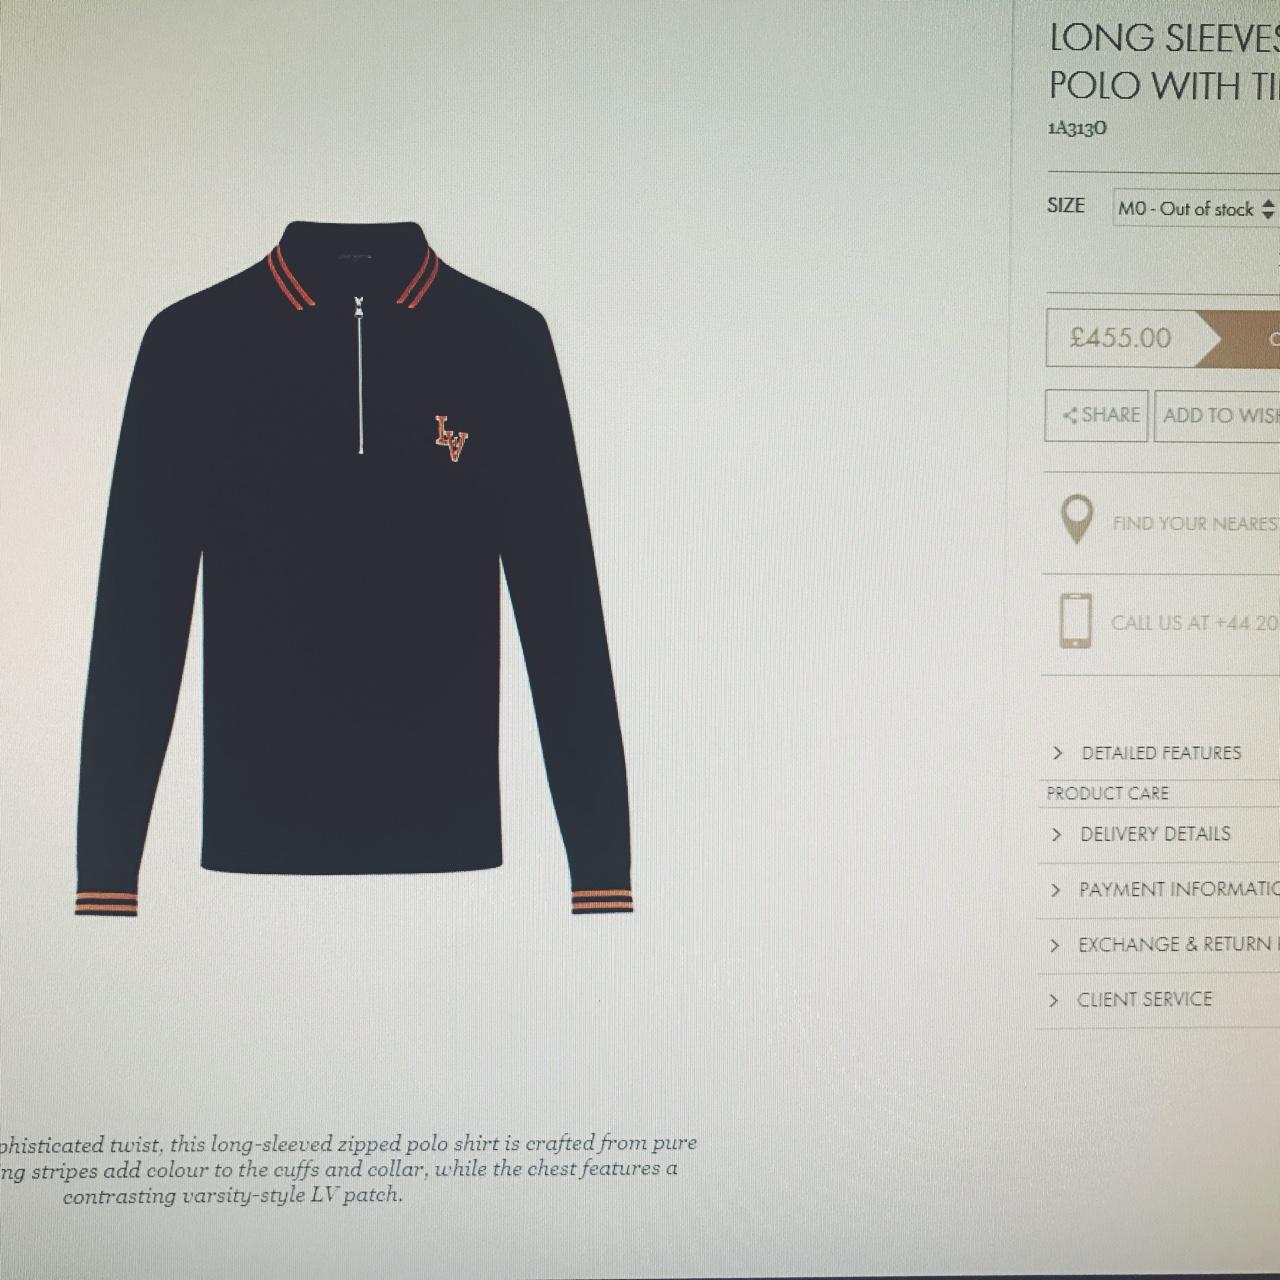 Louis Vuitton mens t shirt xl brand new never worn  - Depop